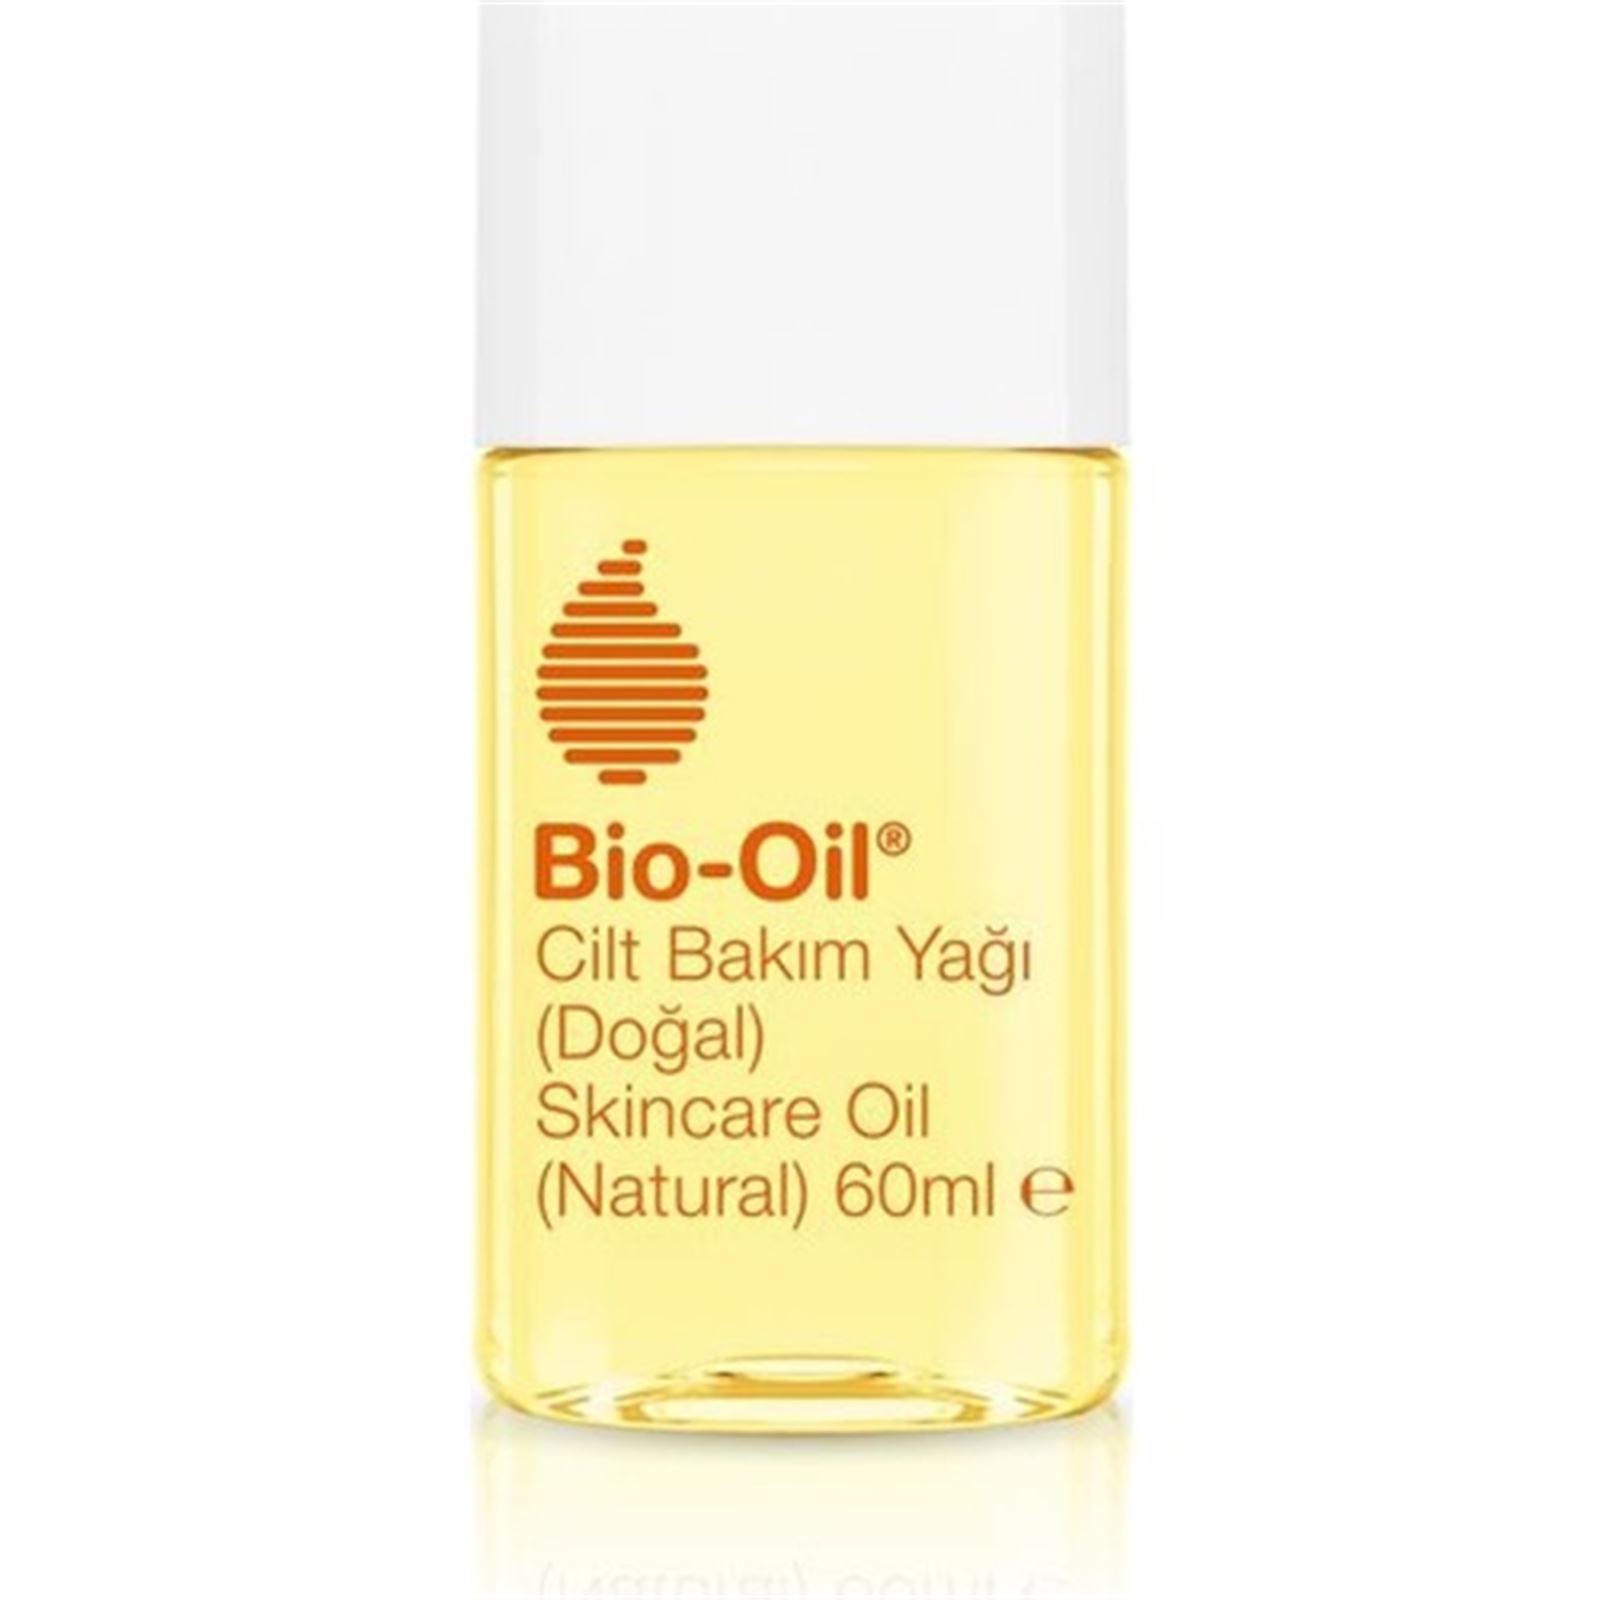 Bio-Oil Natural Cilt Bakım Yağı 60ml